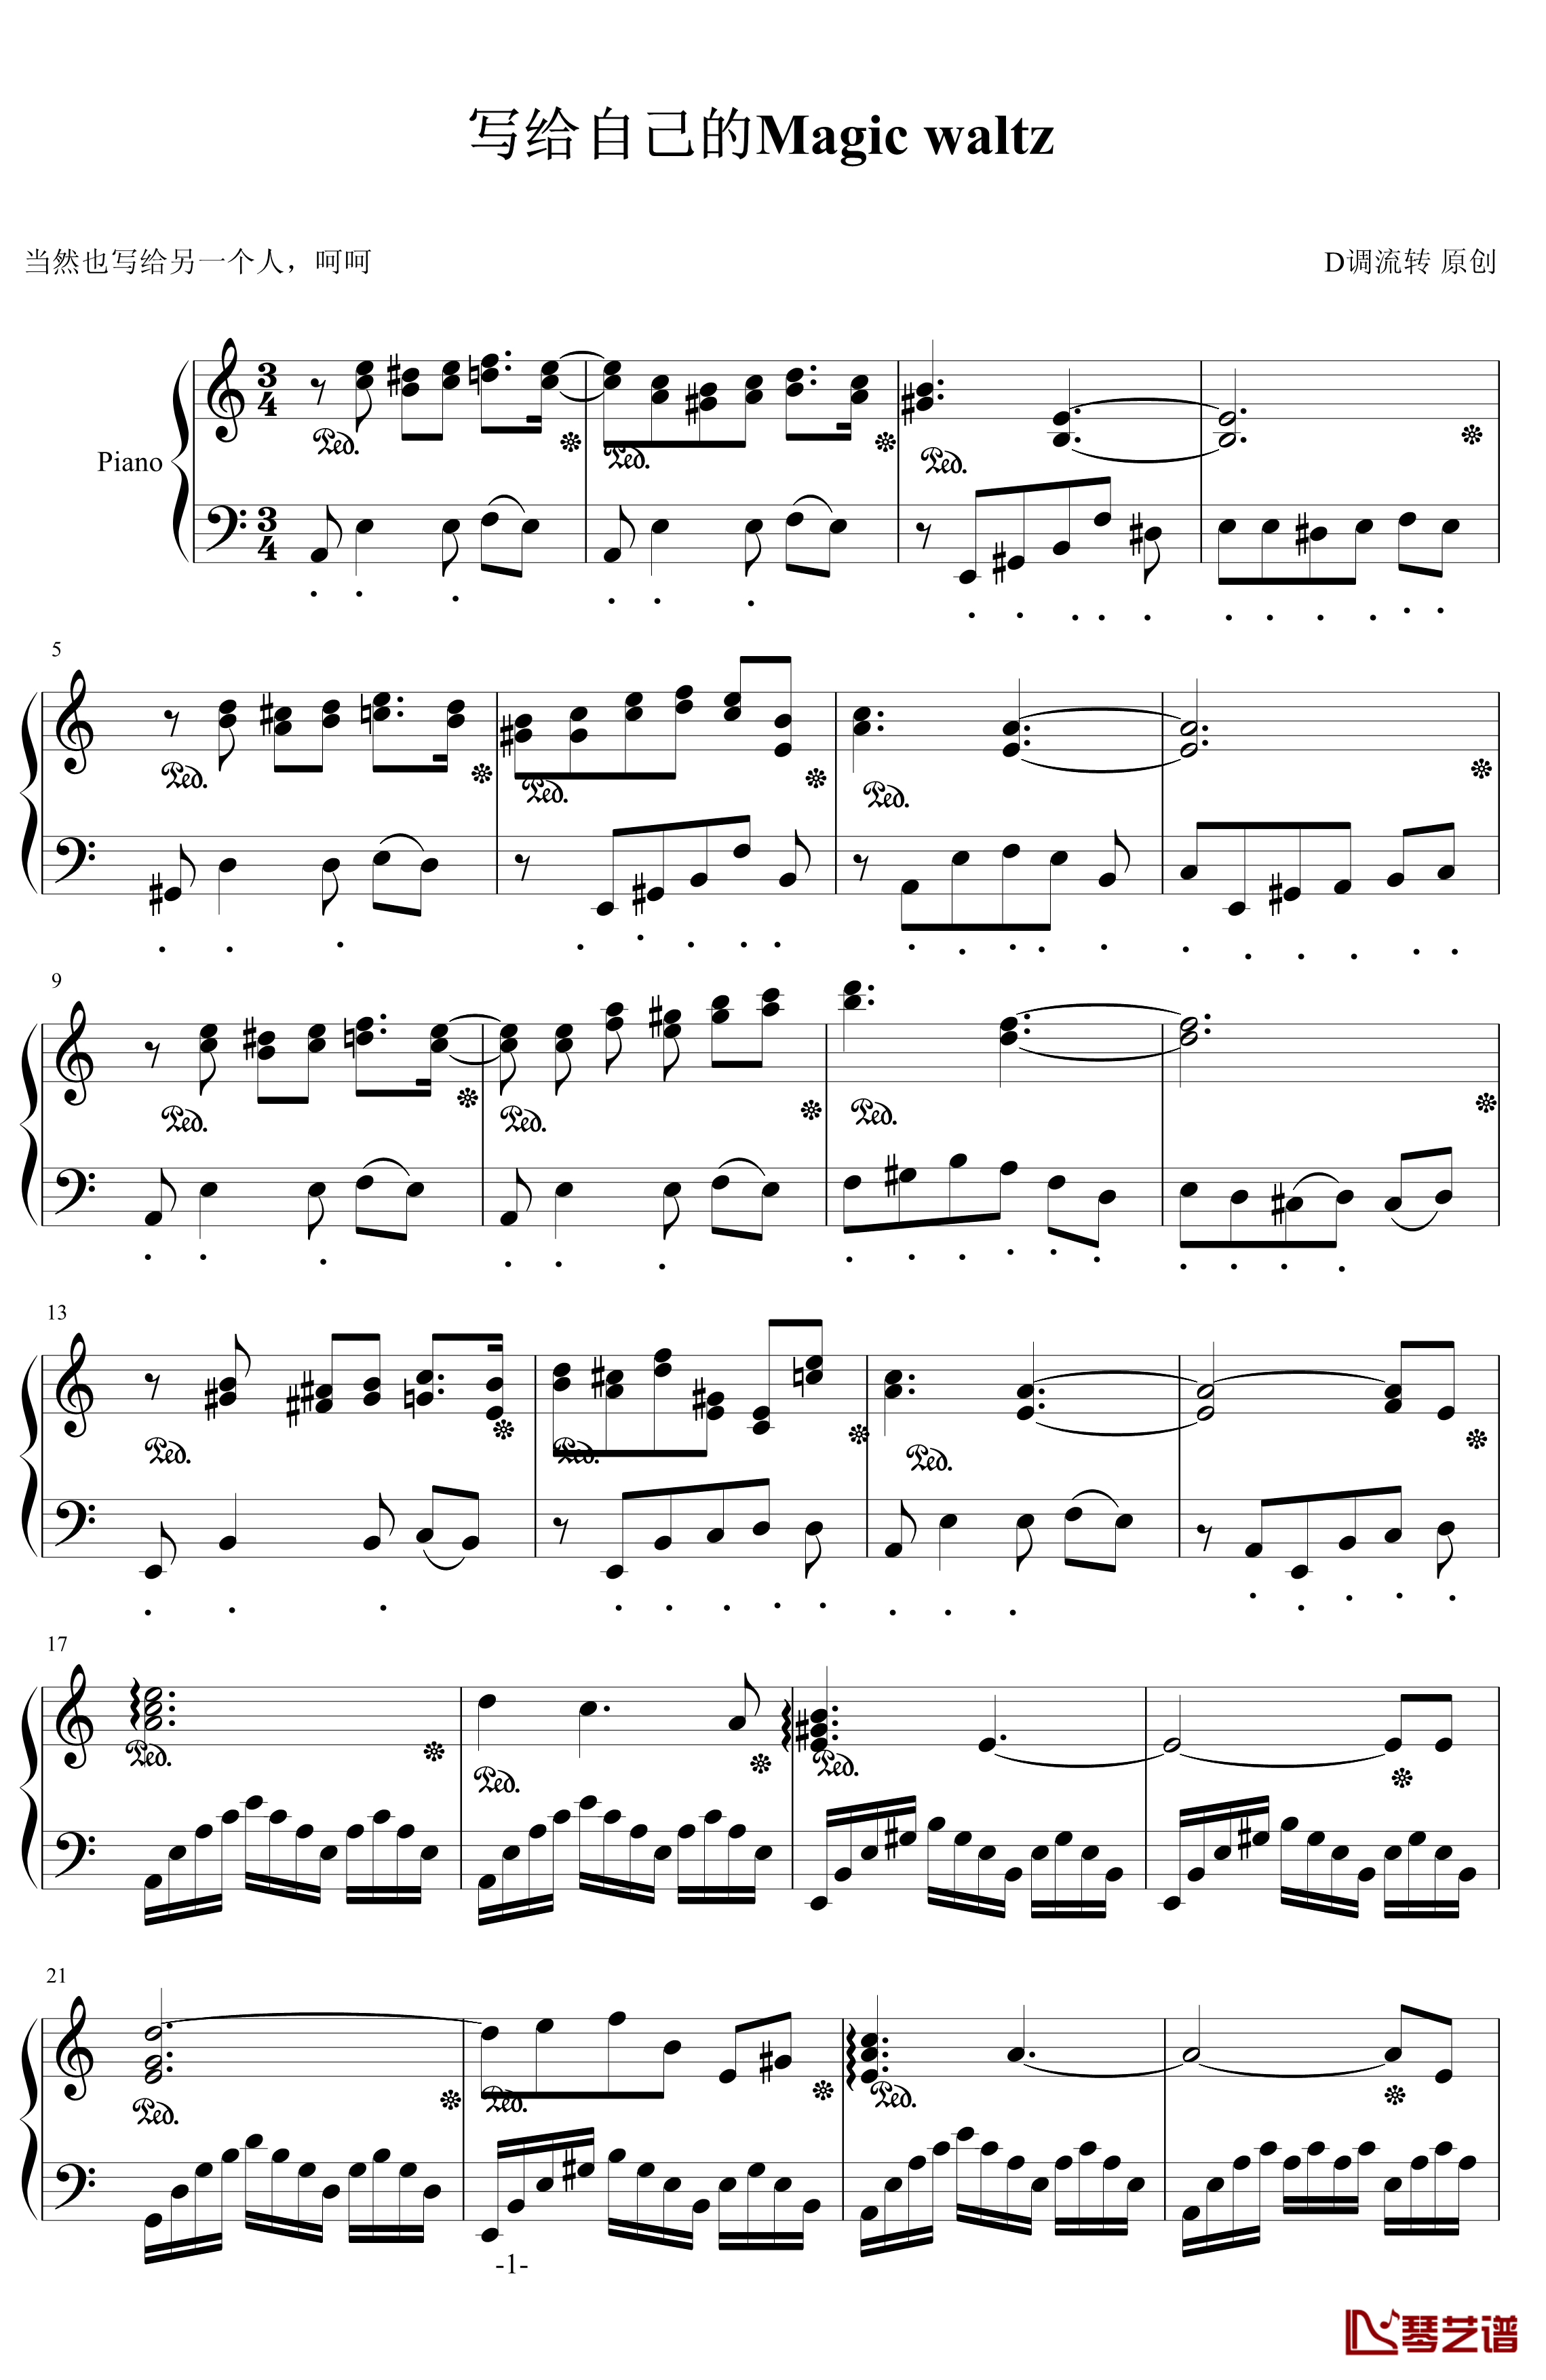 写给自己的Magic Waltz钢琴谱-liuzhuan1